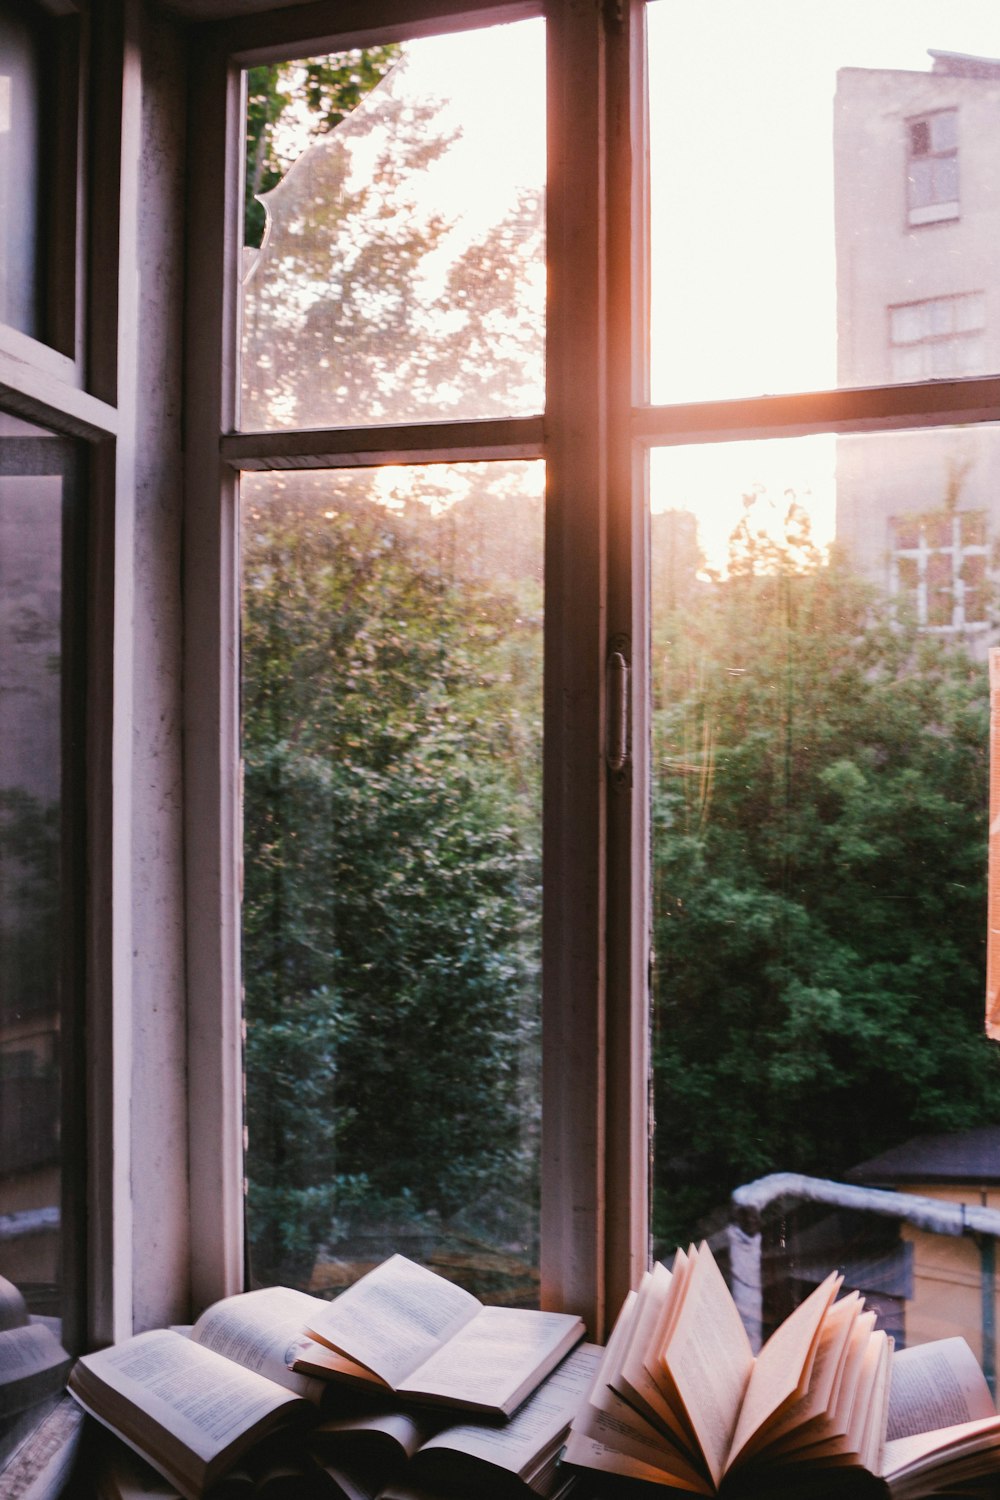 Bücher neben dem Fenster während des Sonnenuntergangs